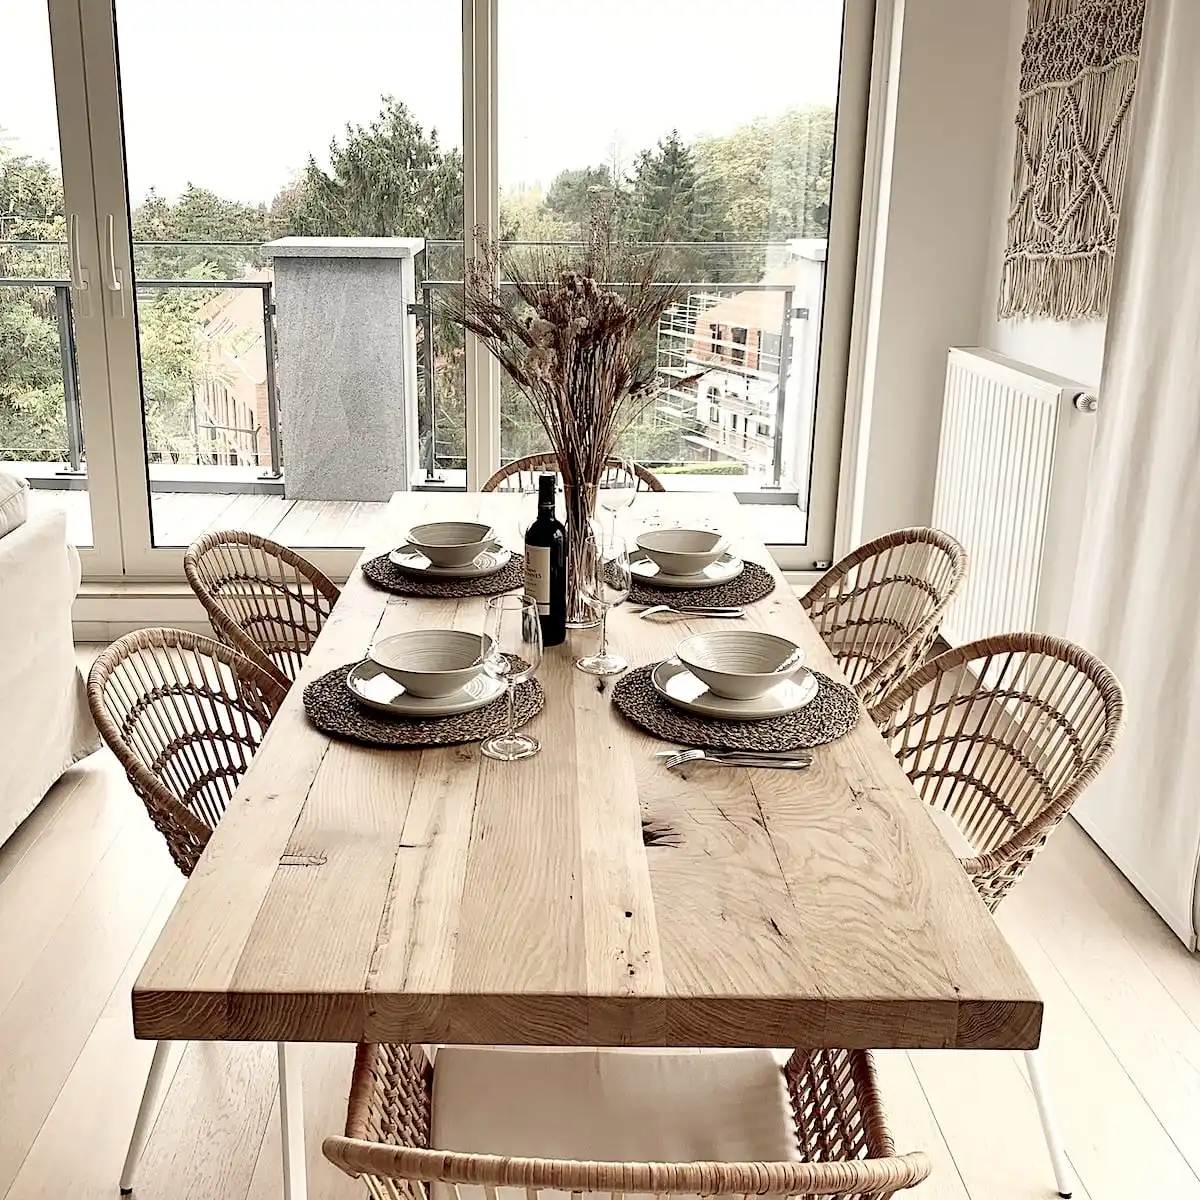  Salle à manger lumineuse avec grande table en bois ancien dressée pour un repas, entourée de chaises en rotin, décoration naturelle et vue extérieure. 